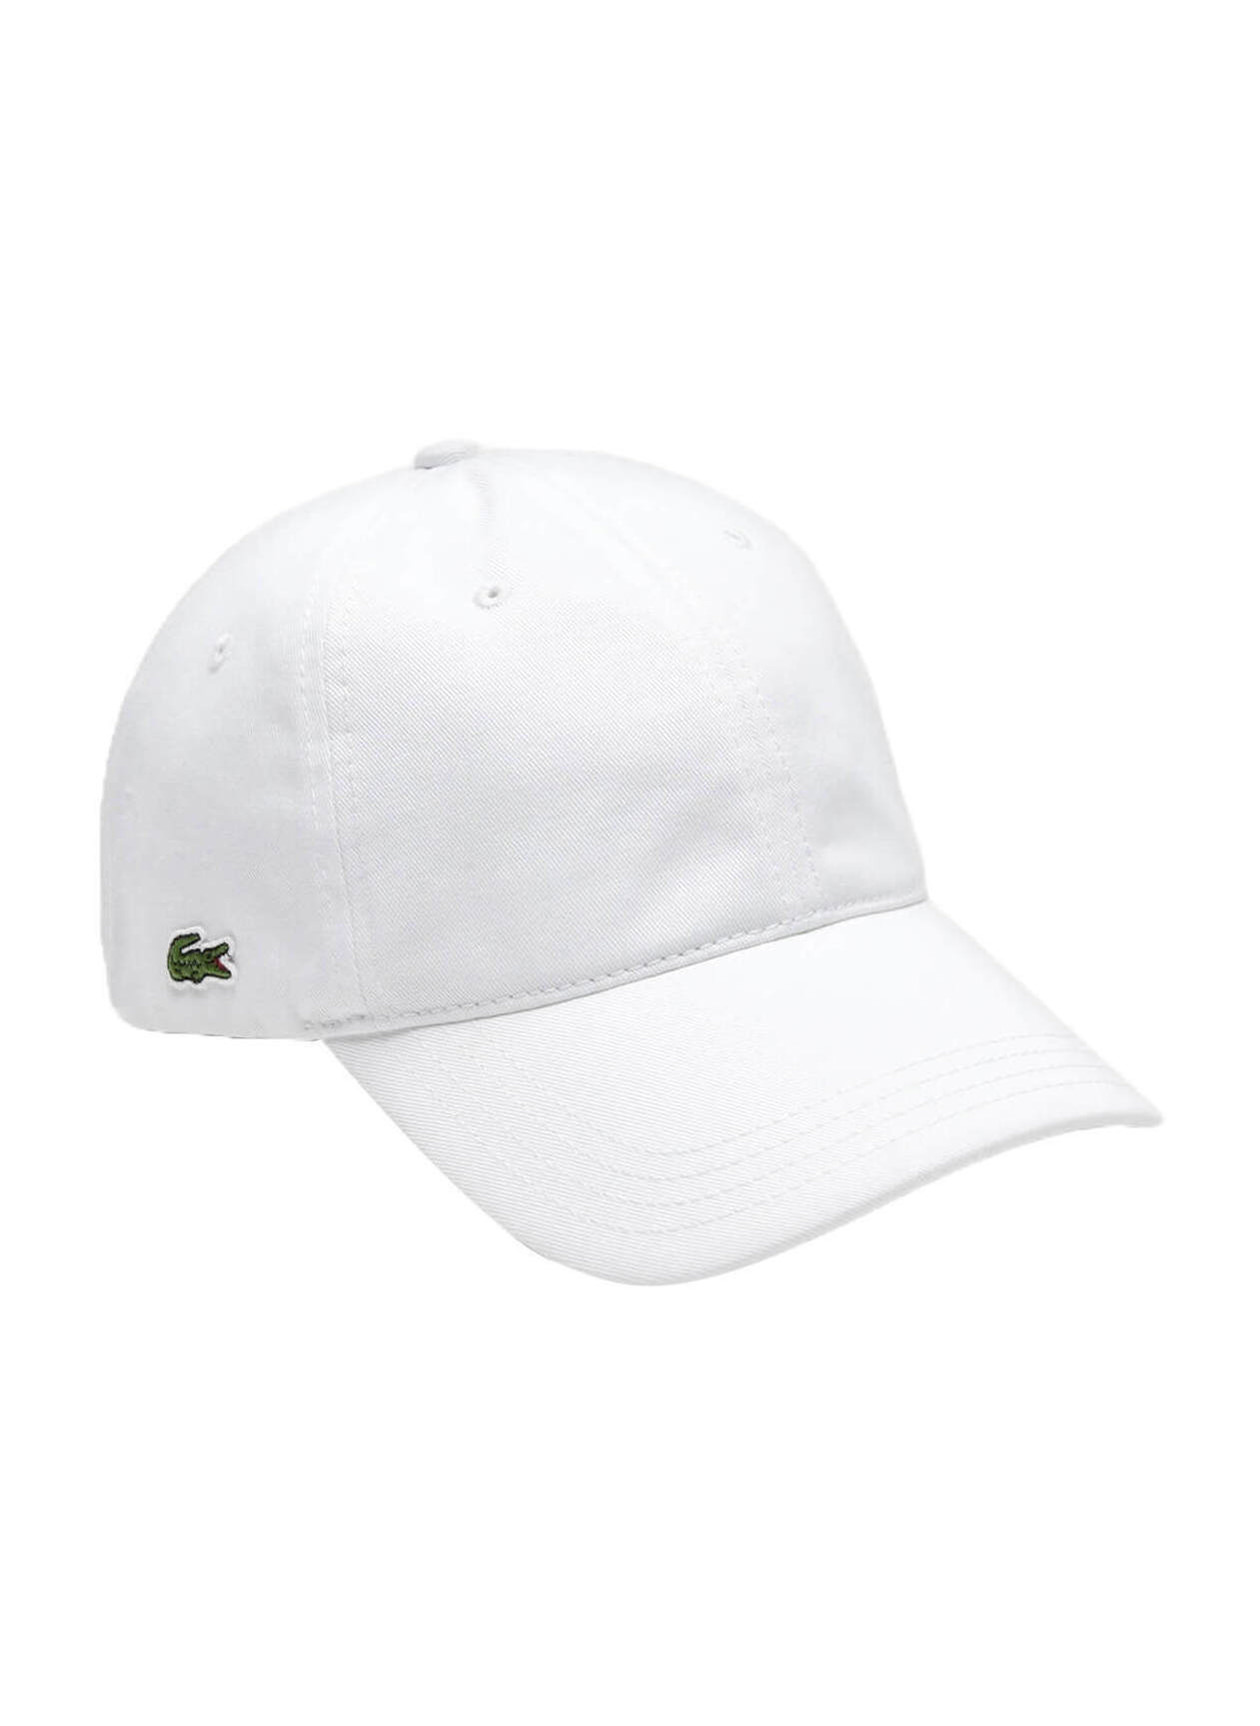 Lacoste White Men's Contrast Strap Cotton Hat